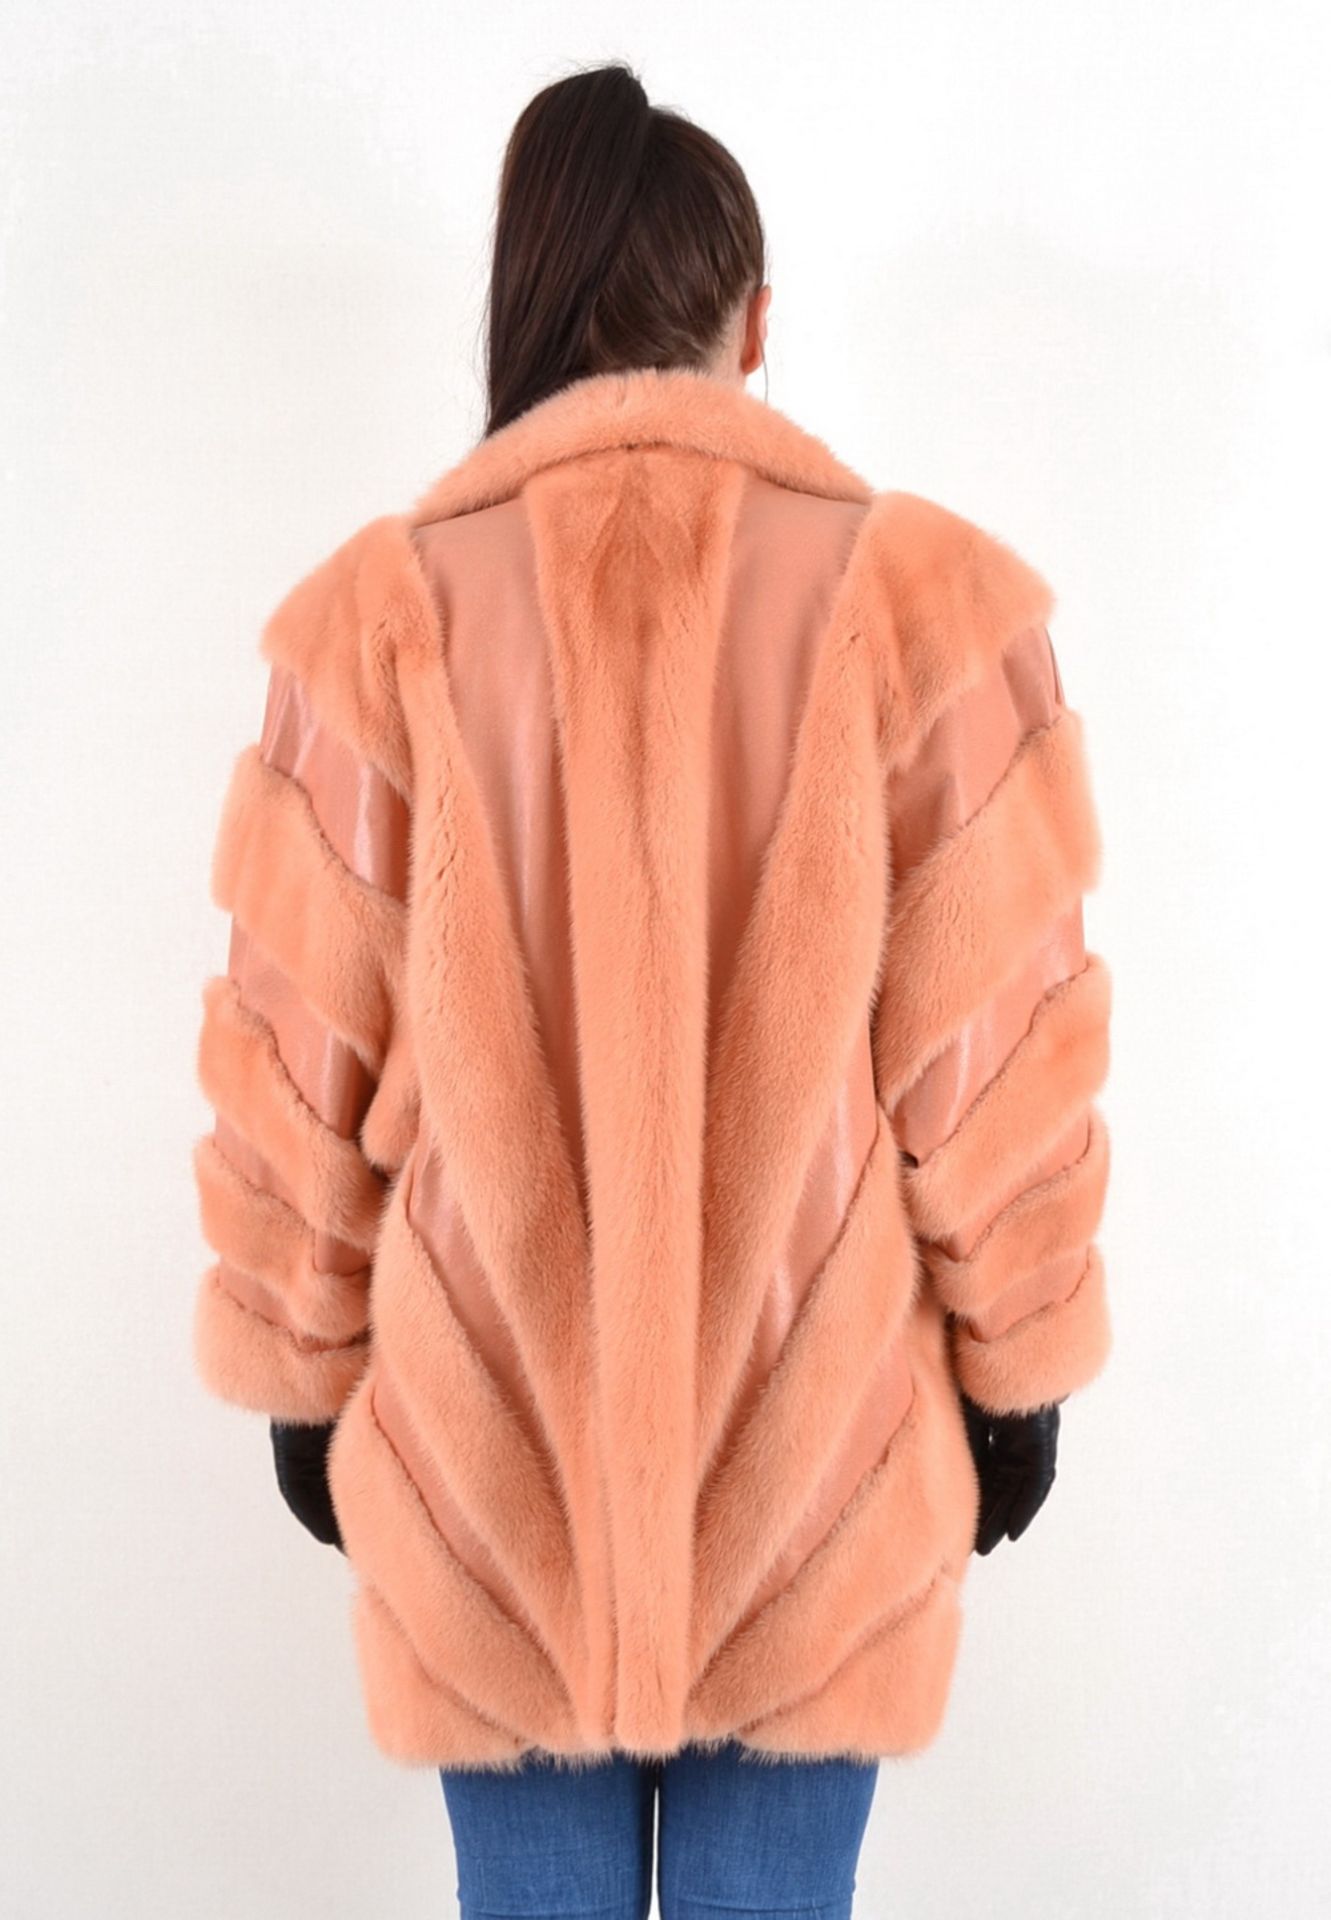 Nerzjacke rosa mit Leder Gr. 46/48, mink jacket pink with leather size 46/48, - Image 6 of 9